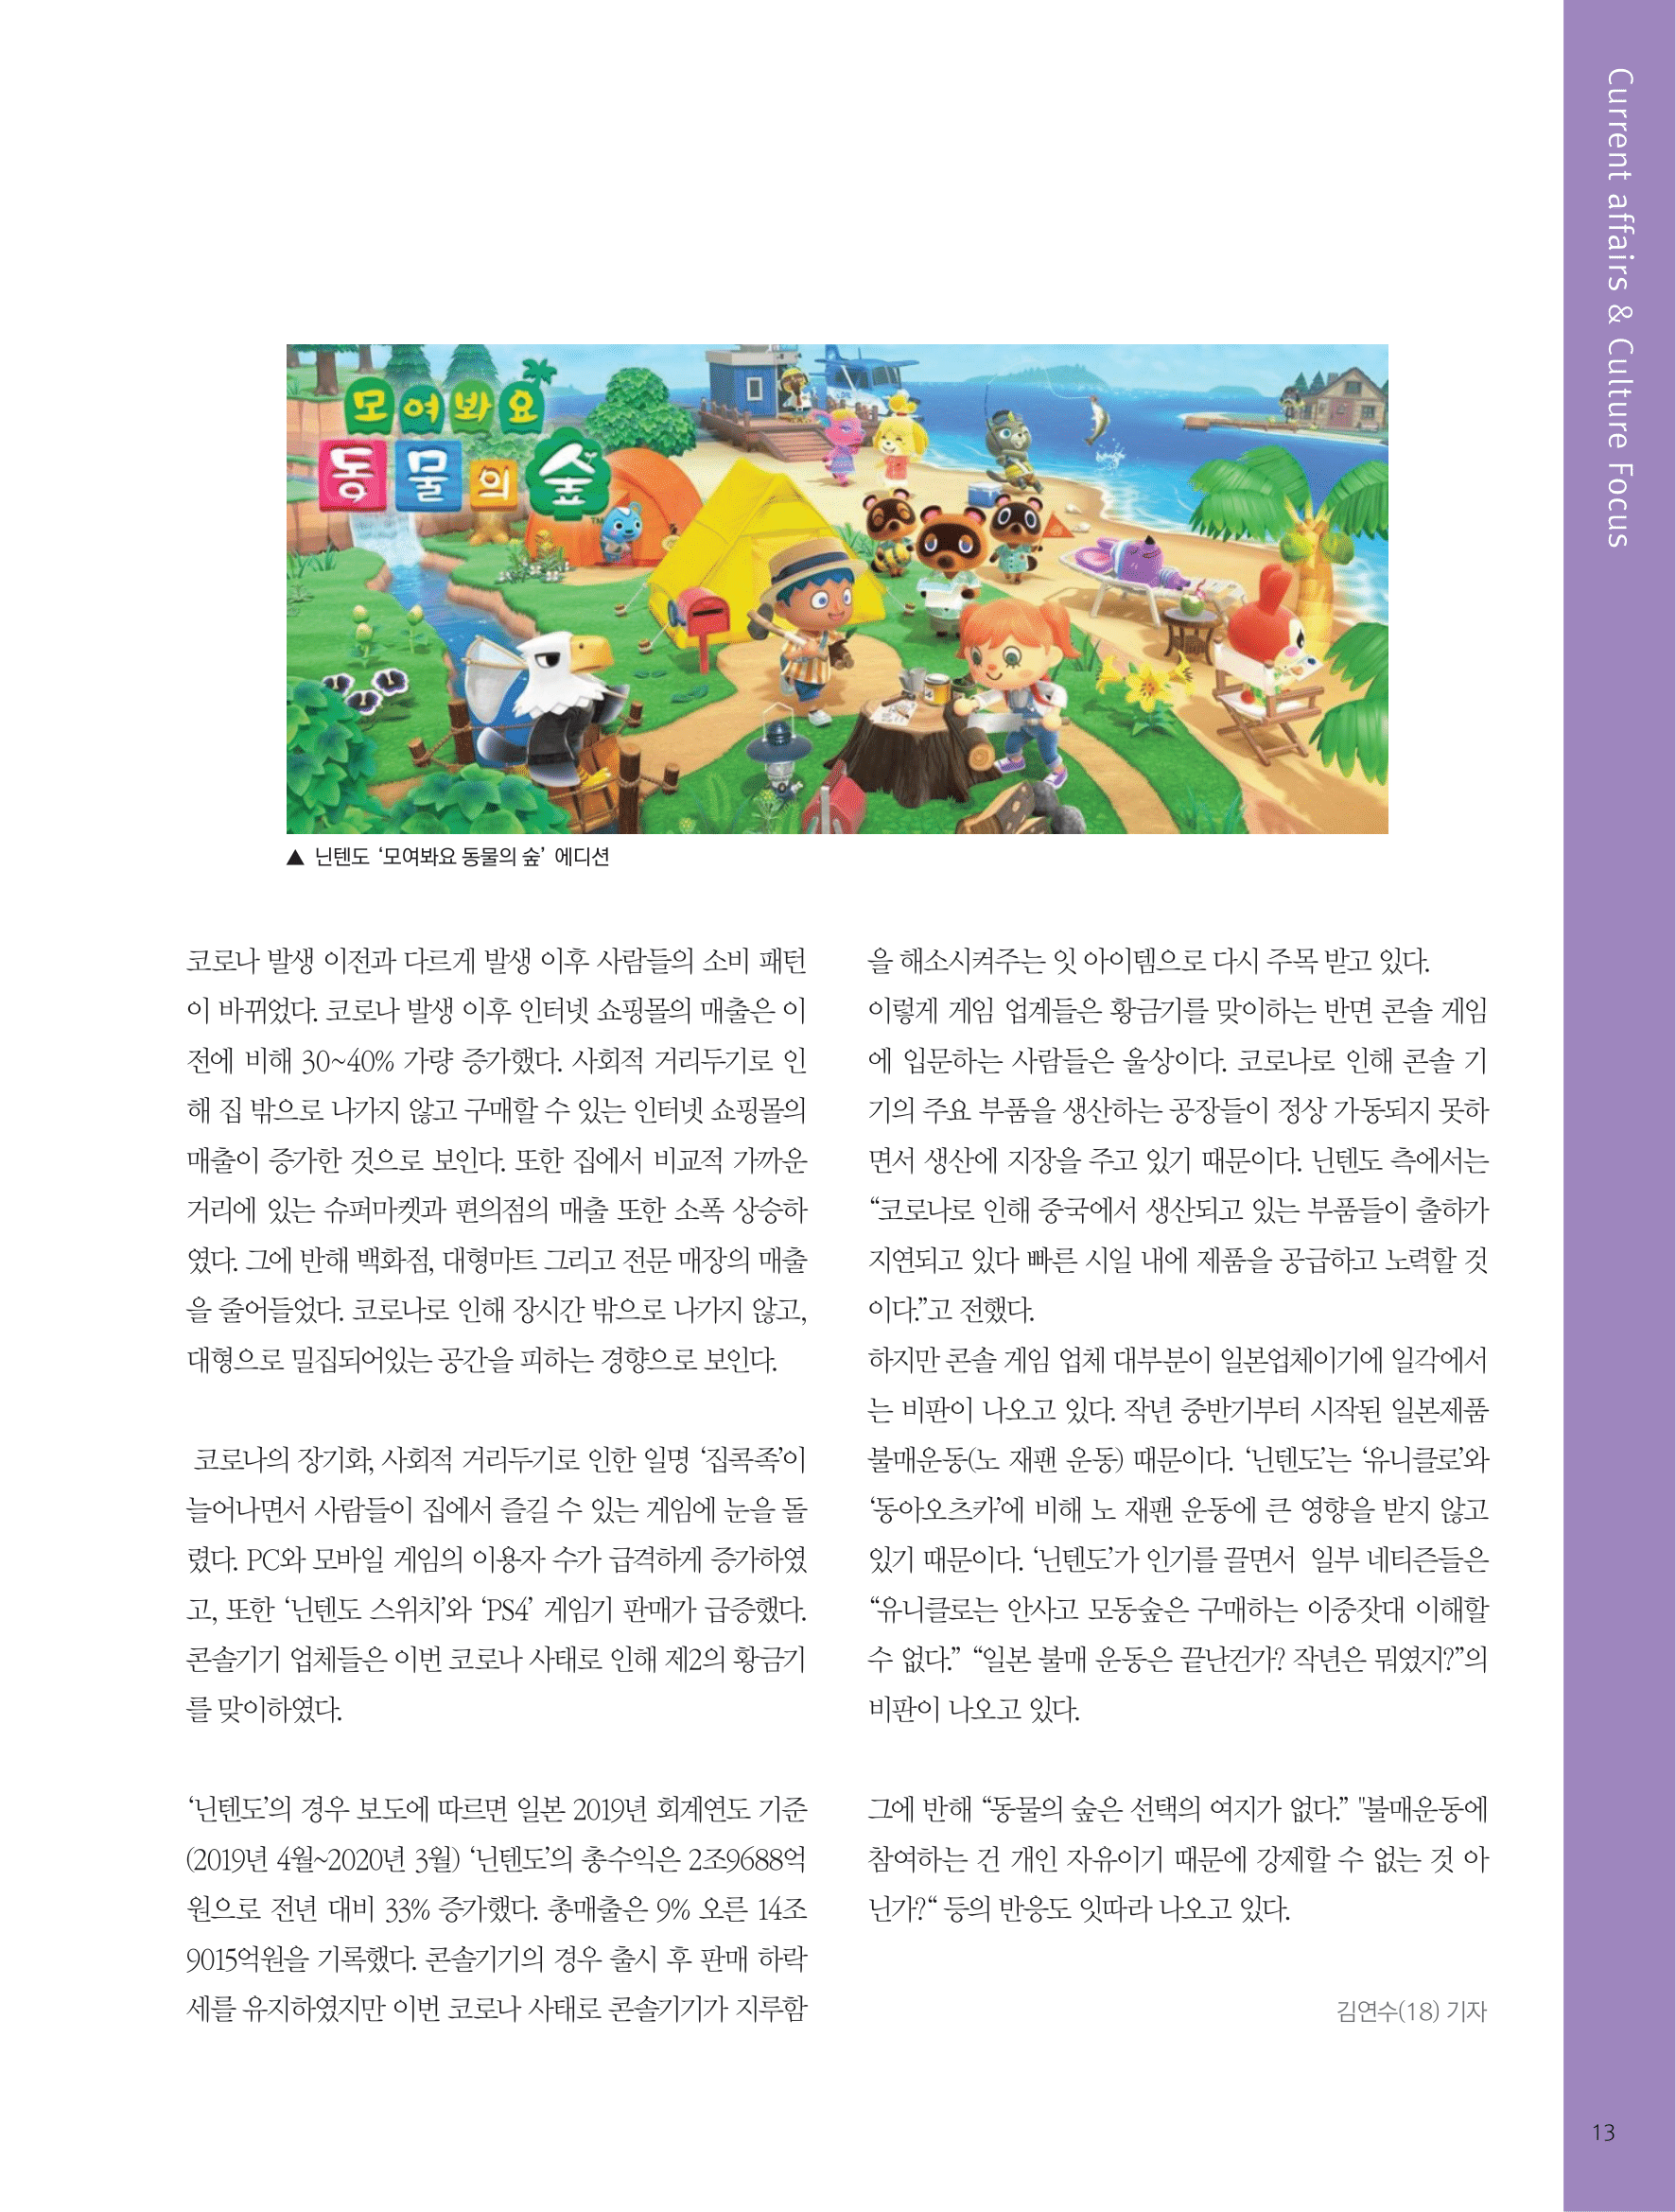 뜻새김 신문 75호 11